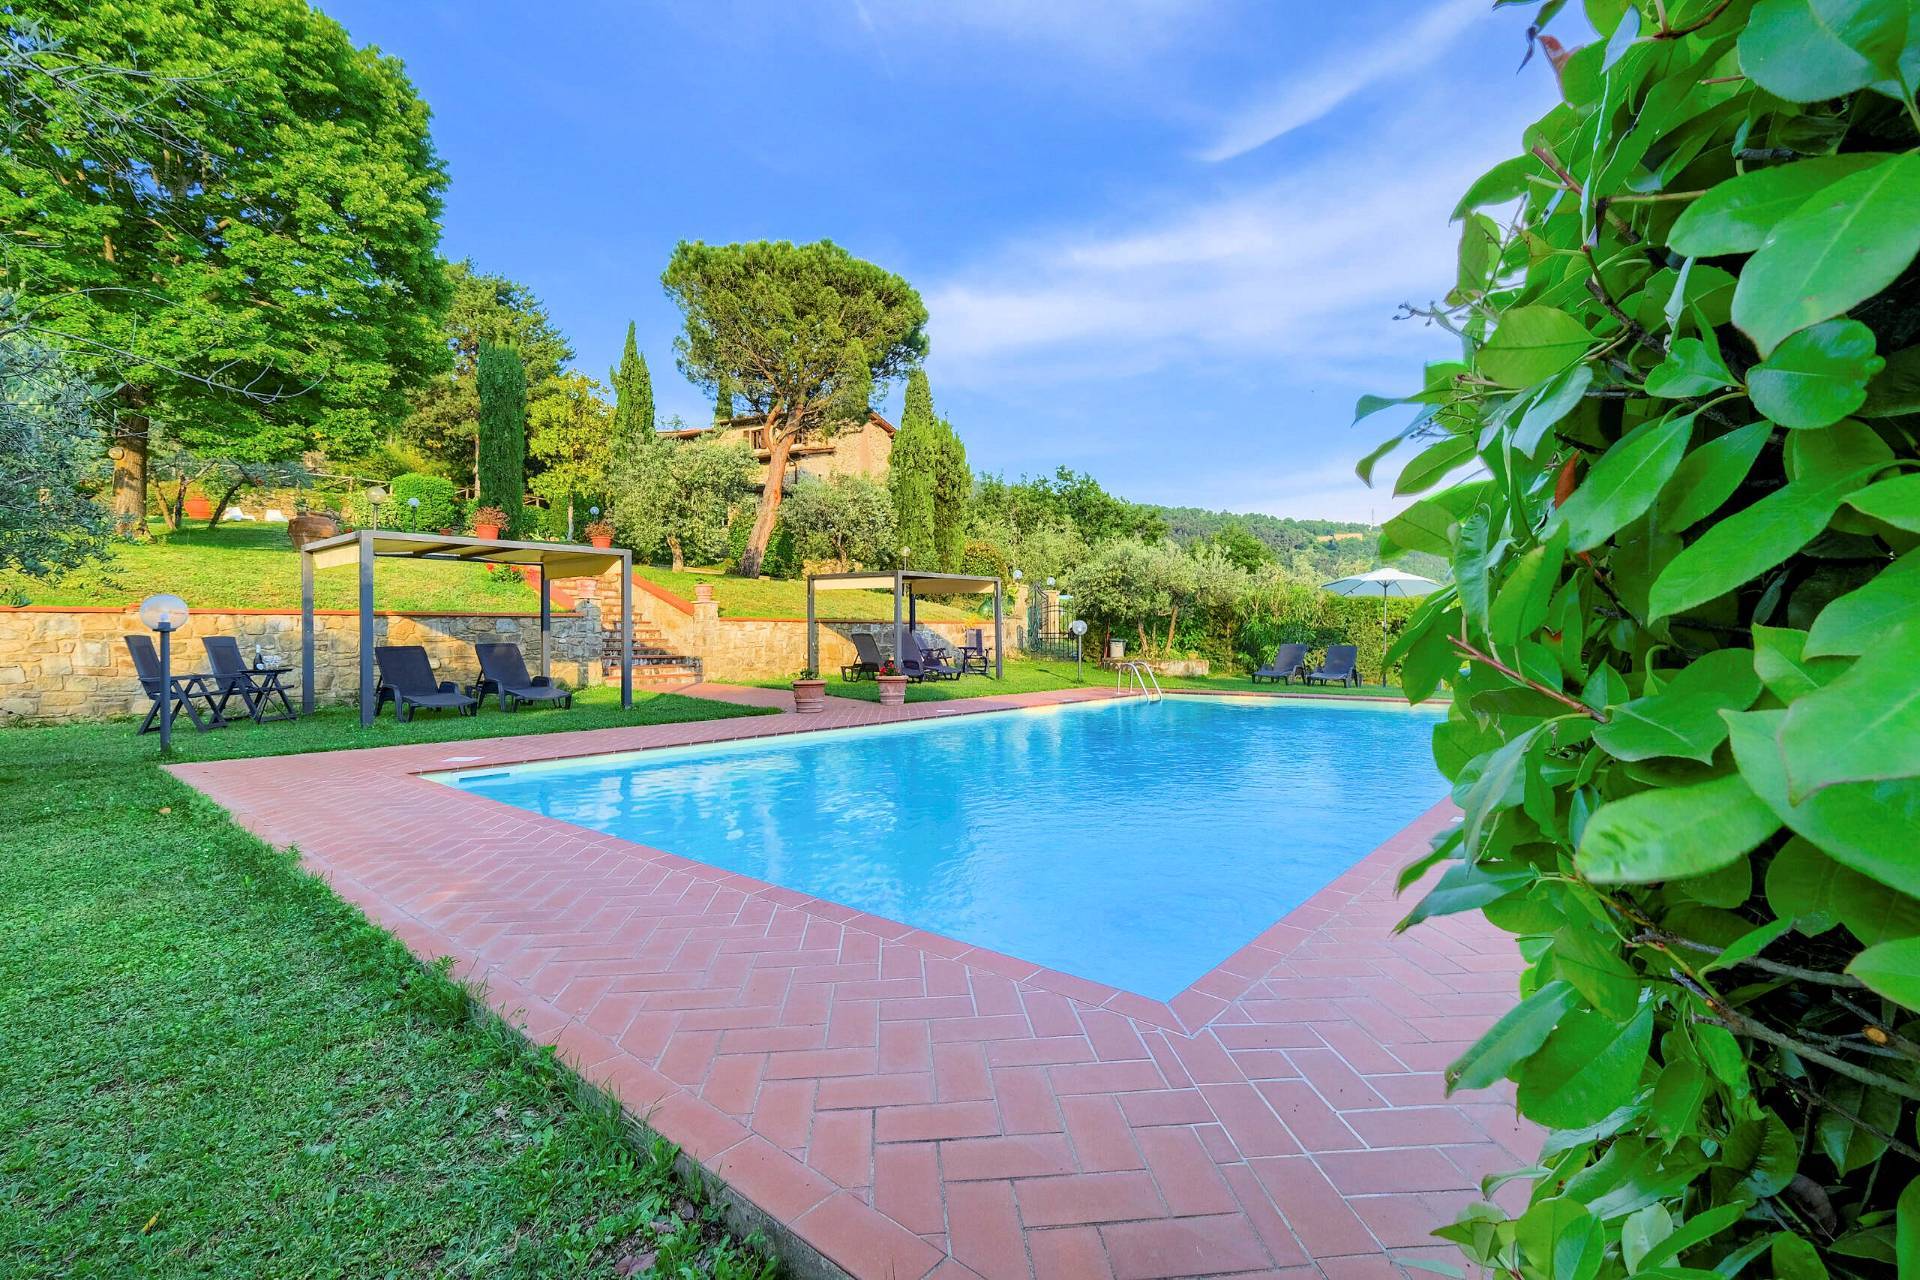 1477-Casale in stile Toscano con parco piscina e dependance in zona panoramica-Reggello-2 Agenzia Immobiliare ASIP